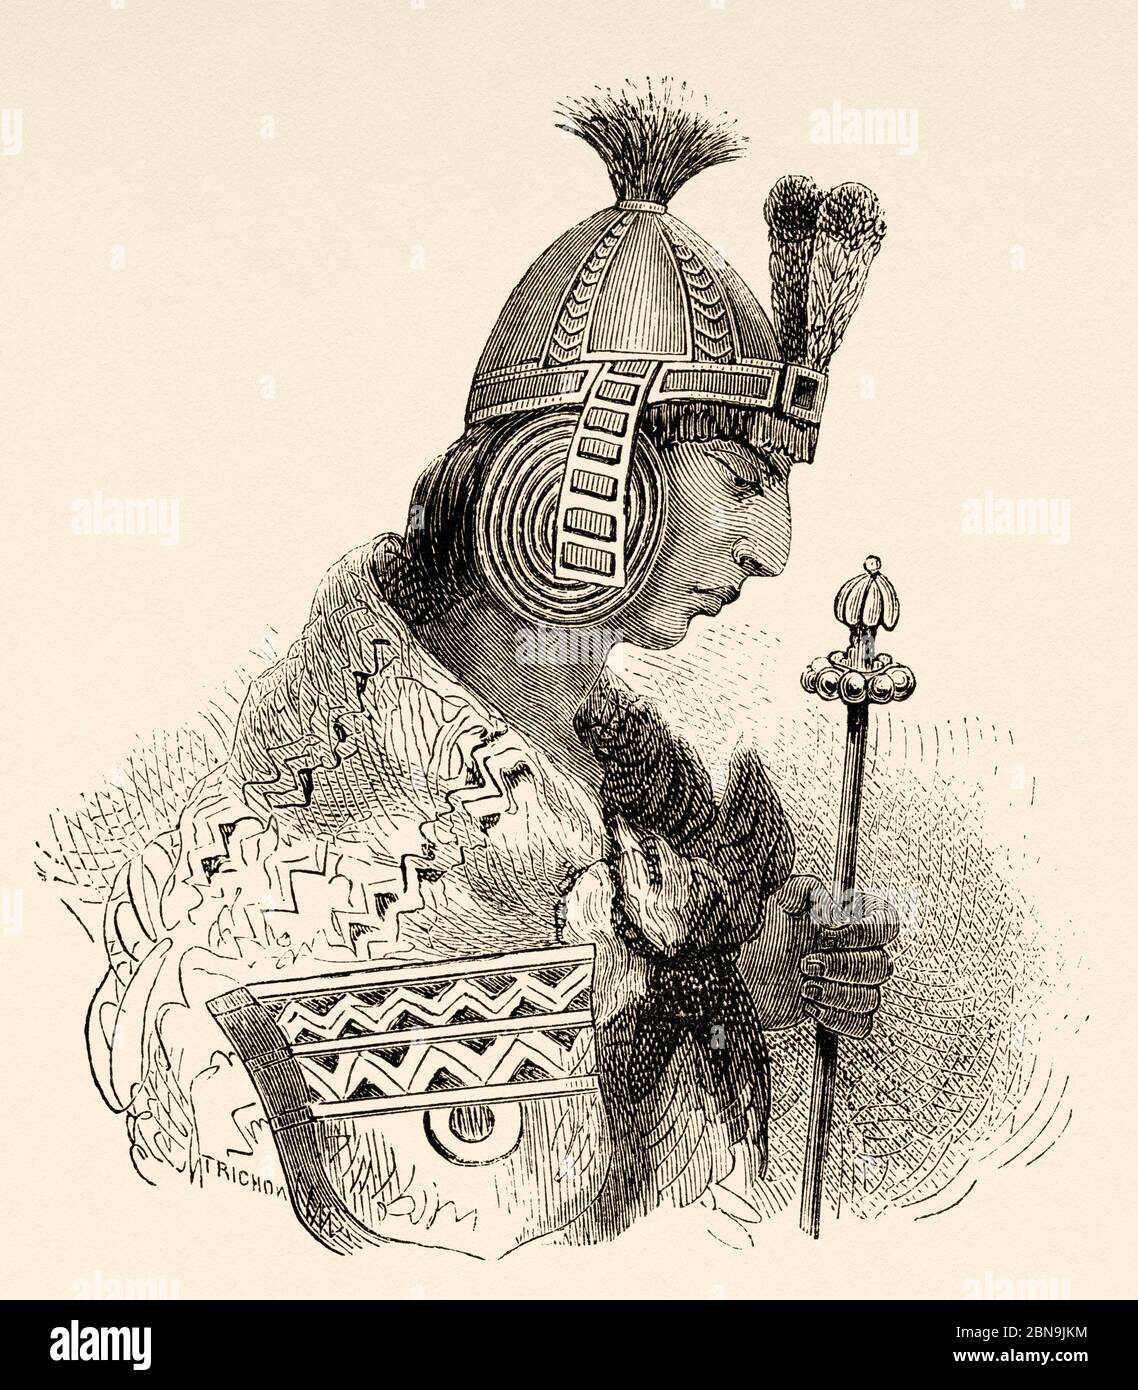 Huascar le 13ème empereur Inca. Waskar Inka (1503 - 1532) Sapa Inca de l'Empire Inca de 1527 à 1532 AP. J-C. Pérou, Amérique du Sud. Illustration gravée du XIXe siècle, le Tour du monde 1863 Banque D'Images